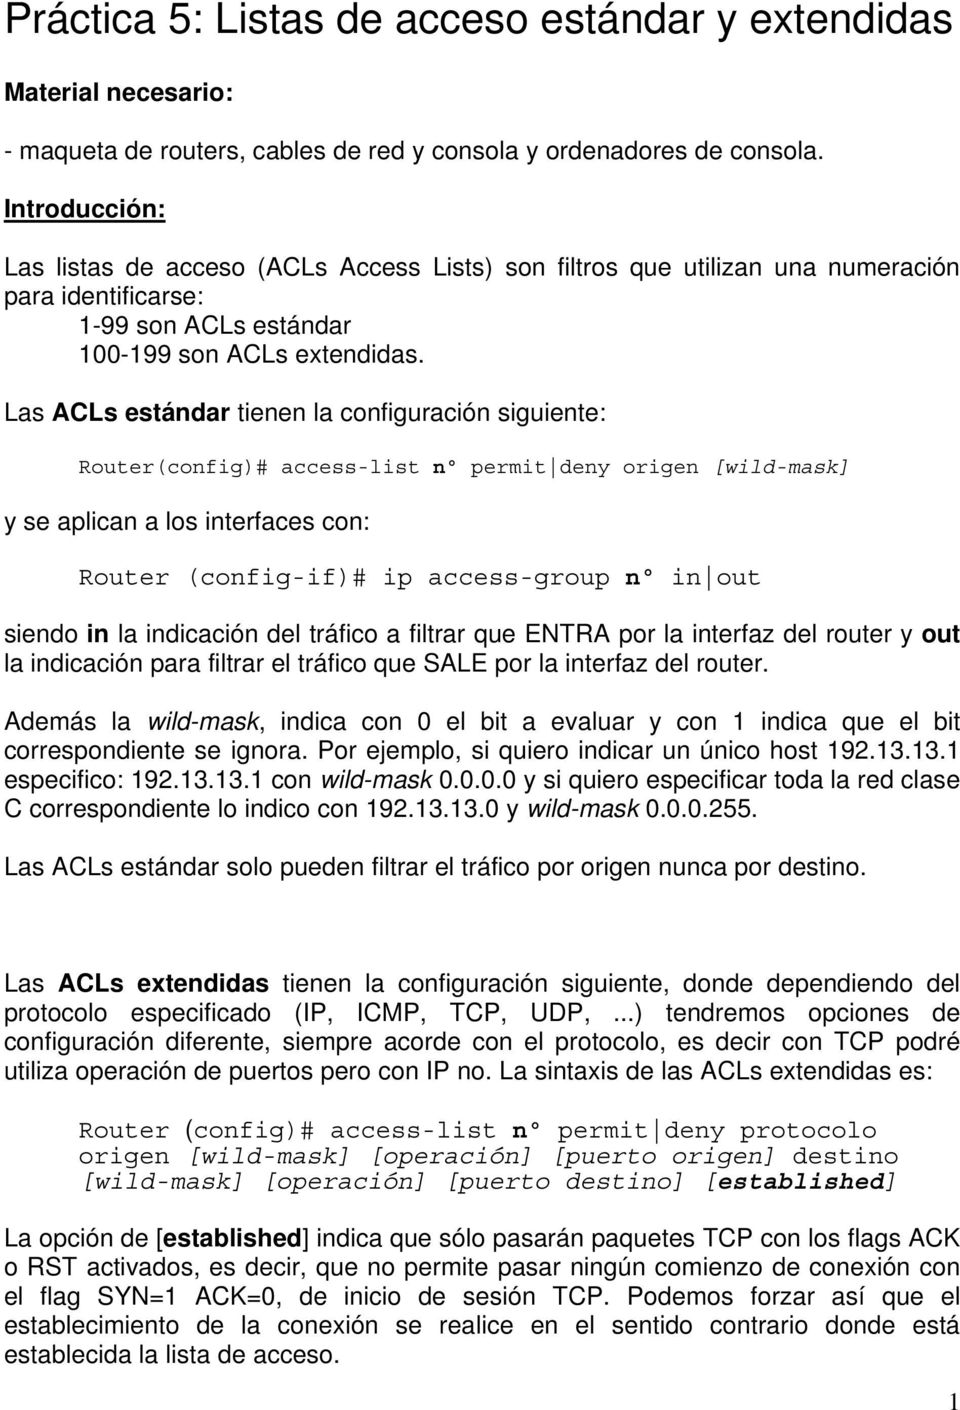 Las ACLs estándar tienen la configuración siguiente: Router(config)# access-list nº permit deny origen [wild-mask] y se aplican a los interfaces con: Router (config-if)# ip access-group nº in out